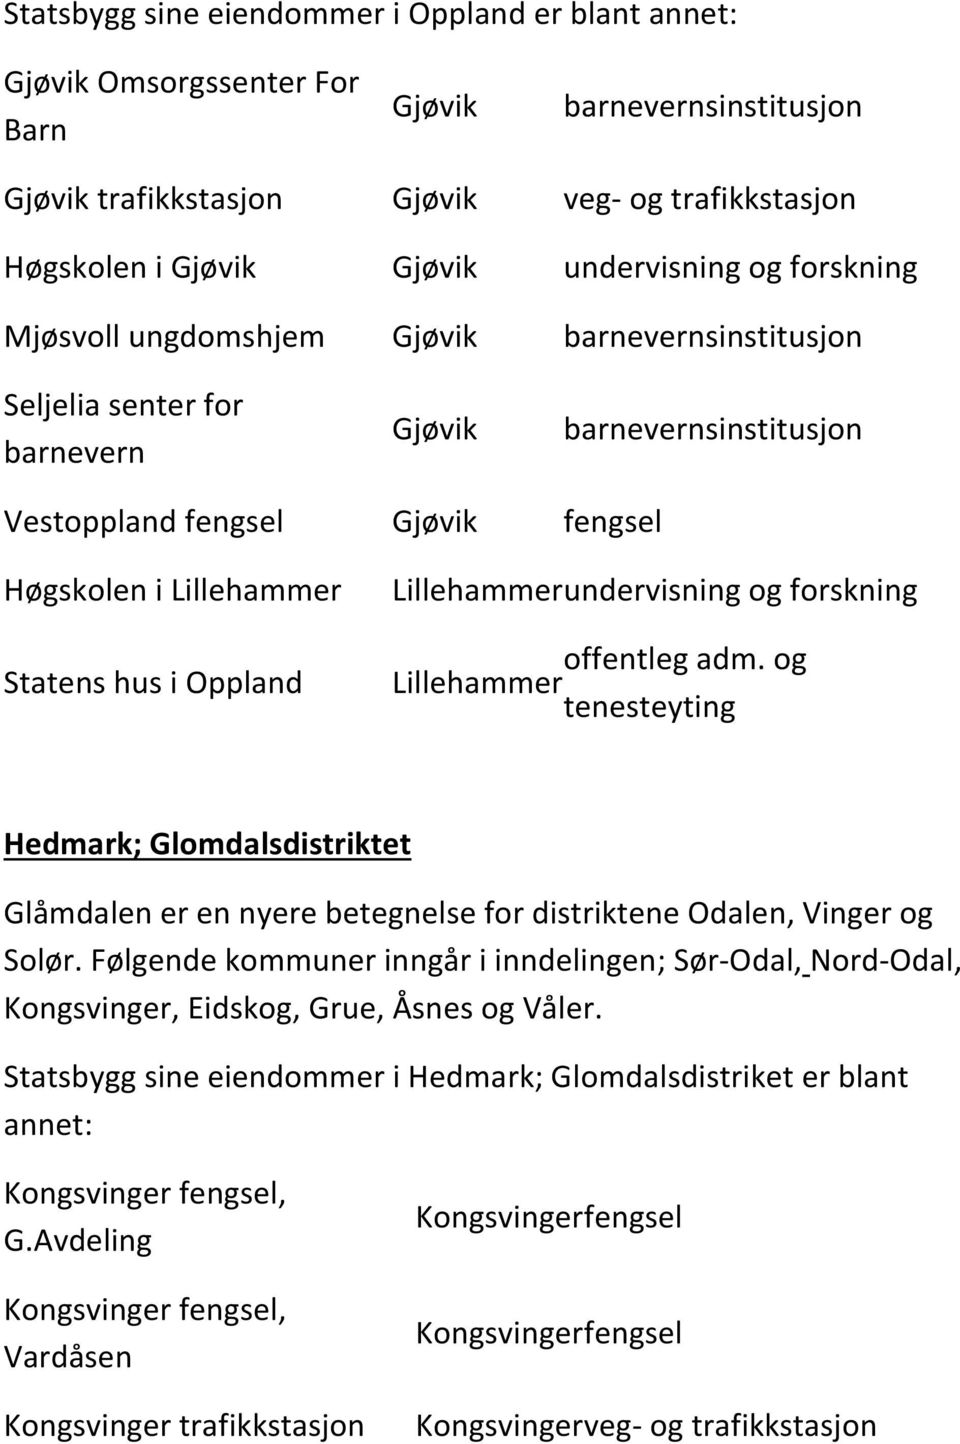 en nyere betegnelse for distriktene Odalen, Vinger og Solør. Følgende kommuner inngår i inndelingen; Sør-Odal, Nord-Odal, Kongsvinger, Eidskog, Grue, Åsnes og Våler.